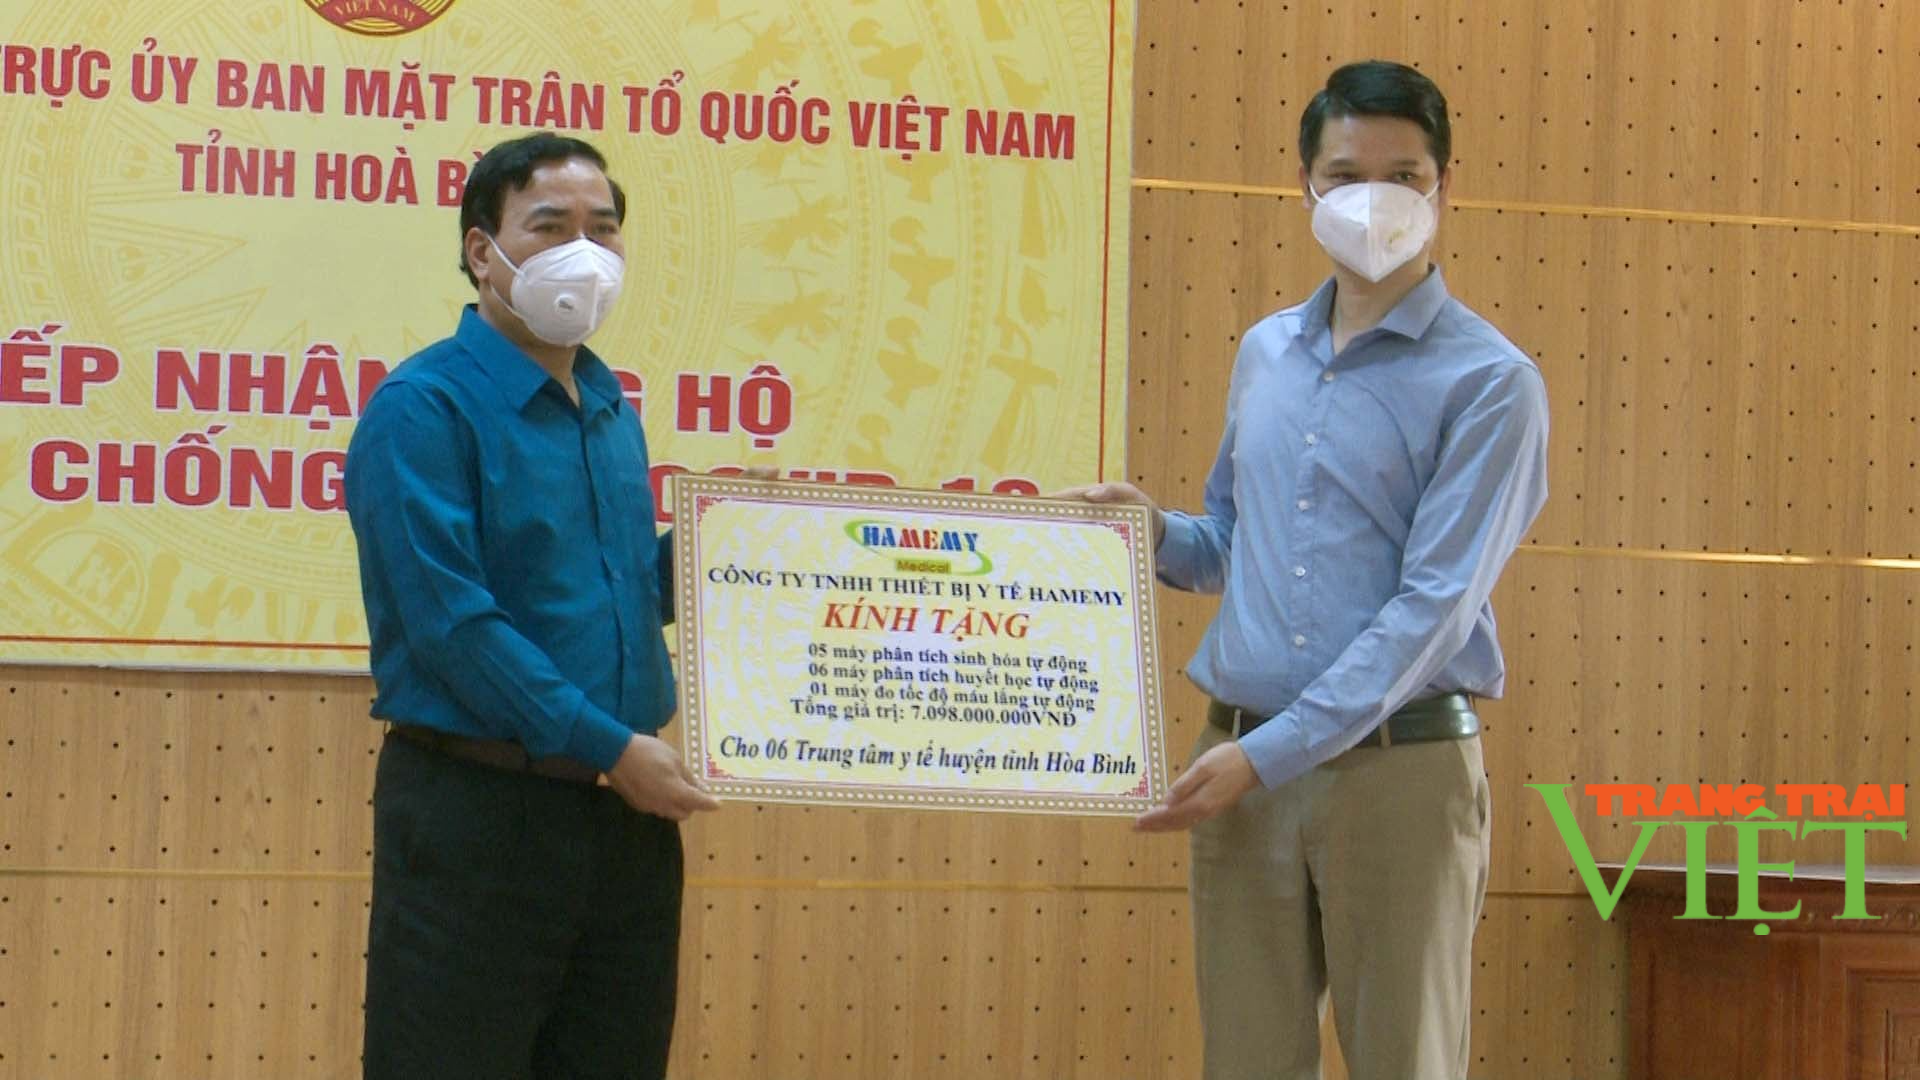 Hoà Bình: Ủng hộ TP. Hồ Chí Minh 1 tỷ đồng và quần áo bảo hộ, khẩu trang y tế phòng chống dịch Covid-19 - Ảnh 4.